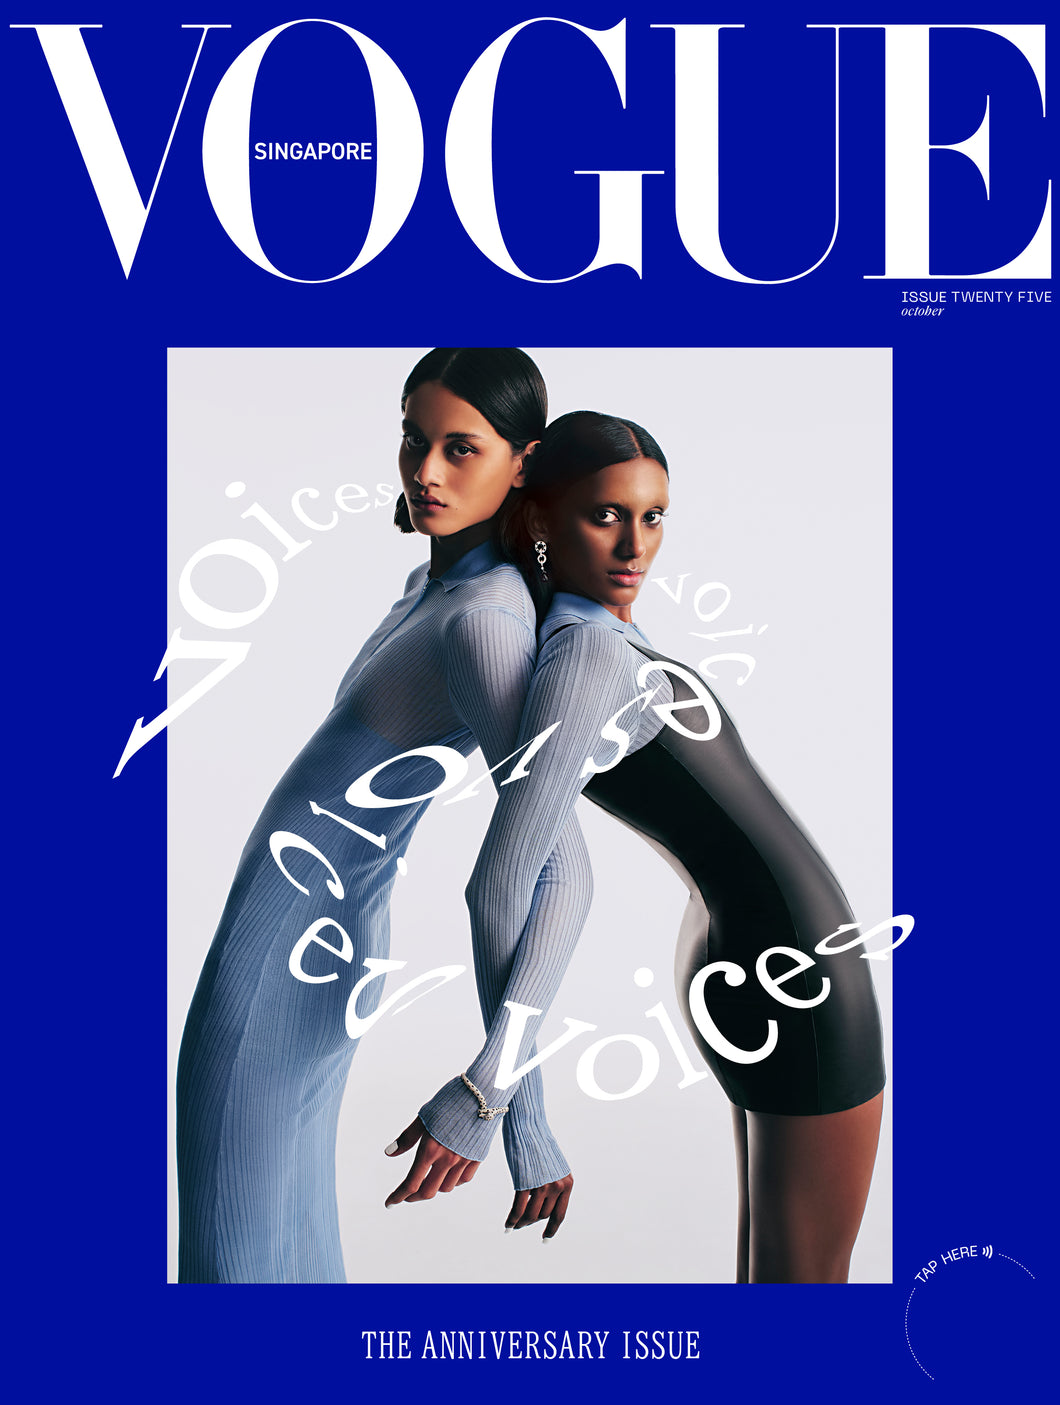 Vogue Singapore: Issue Twenty Five, VOICES